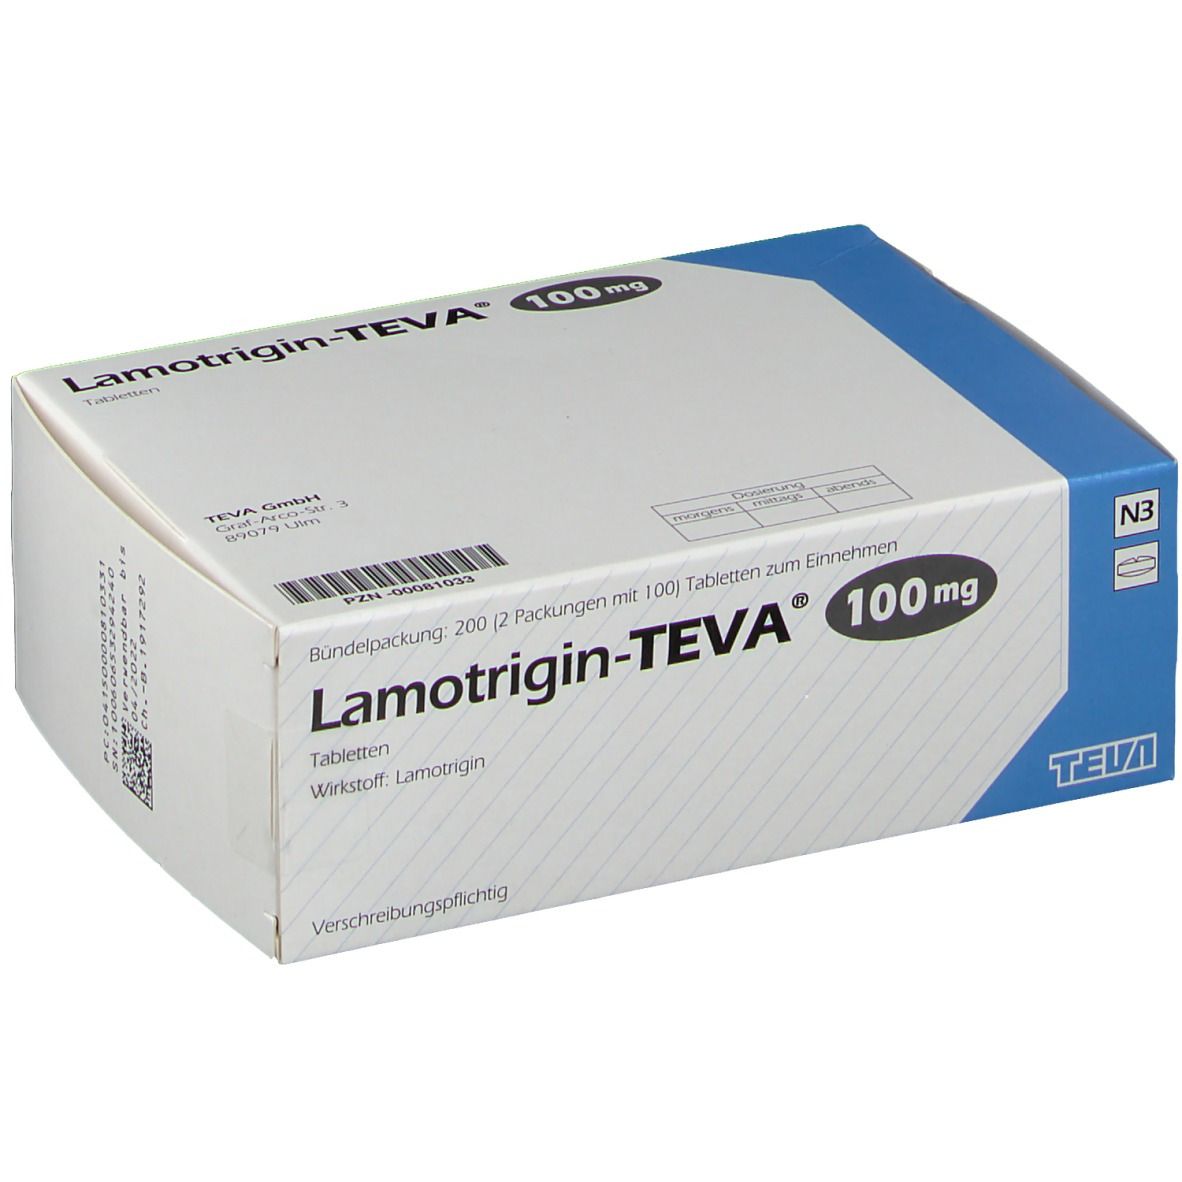 Lamotrigin-TEVA® mg 200 St -